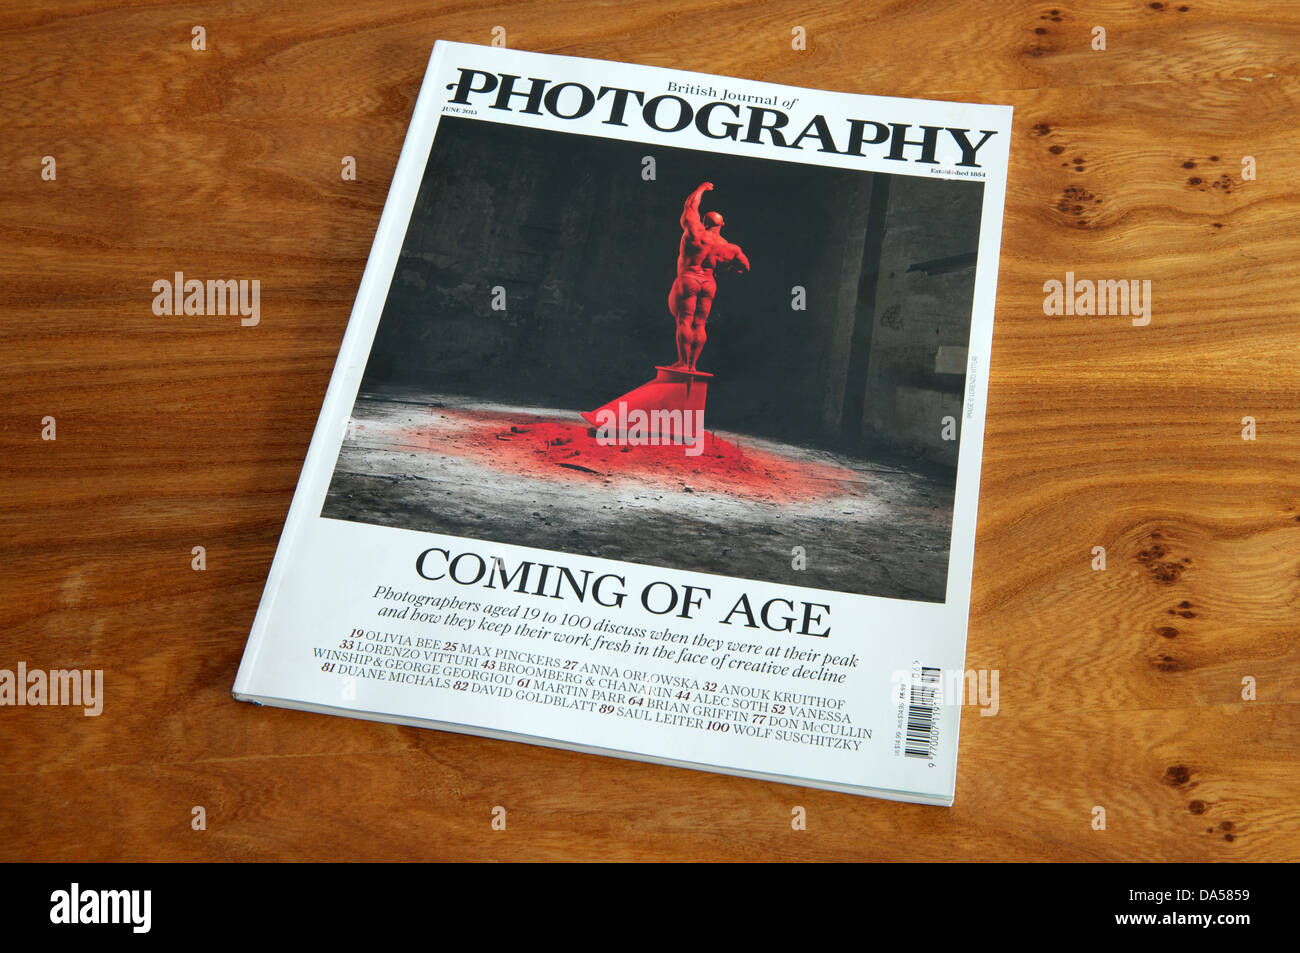 British Journal of Photography magazine (June 2013) Stock Photo